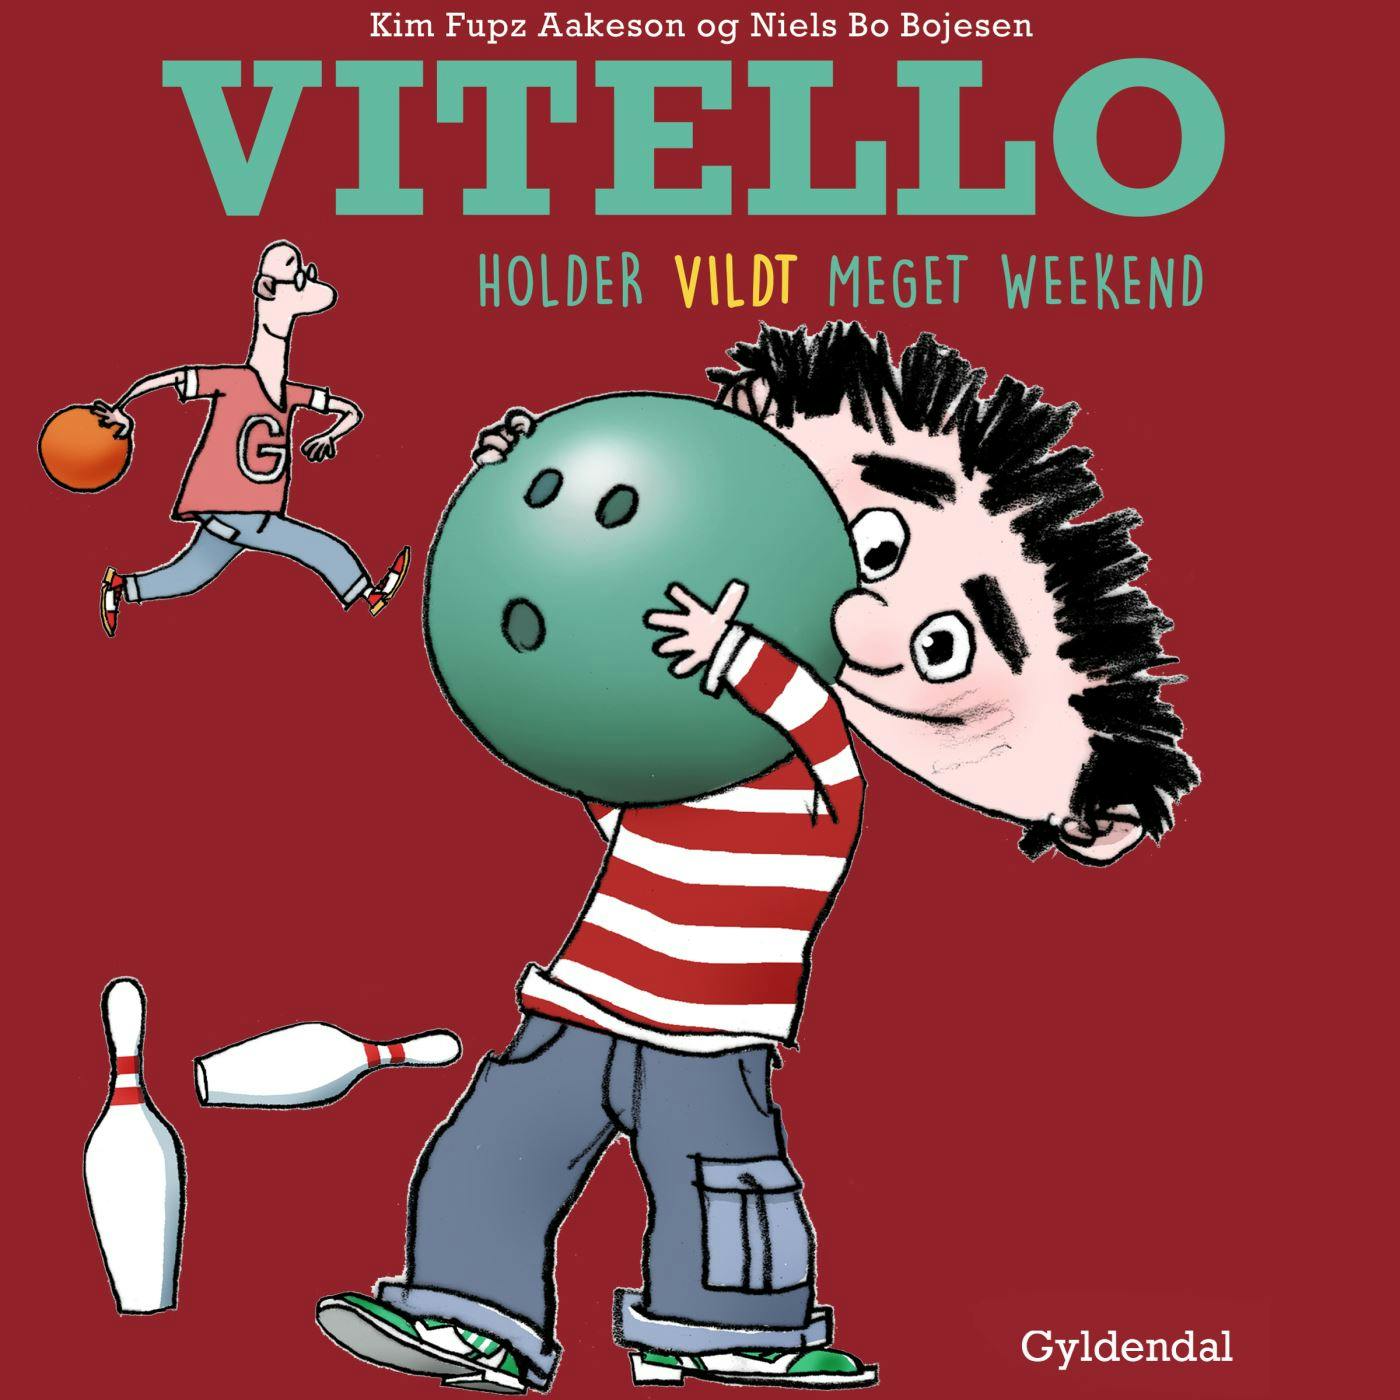 Vitello holder vildt meget weekend - undefined